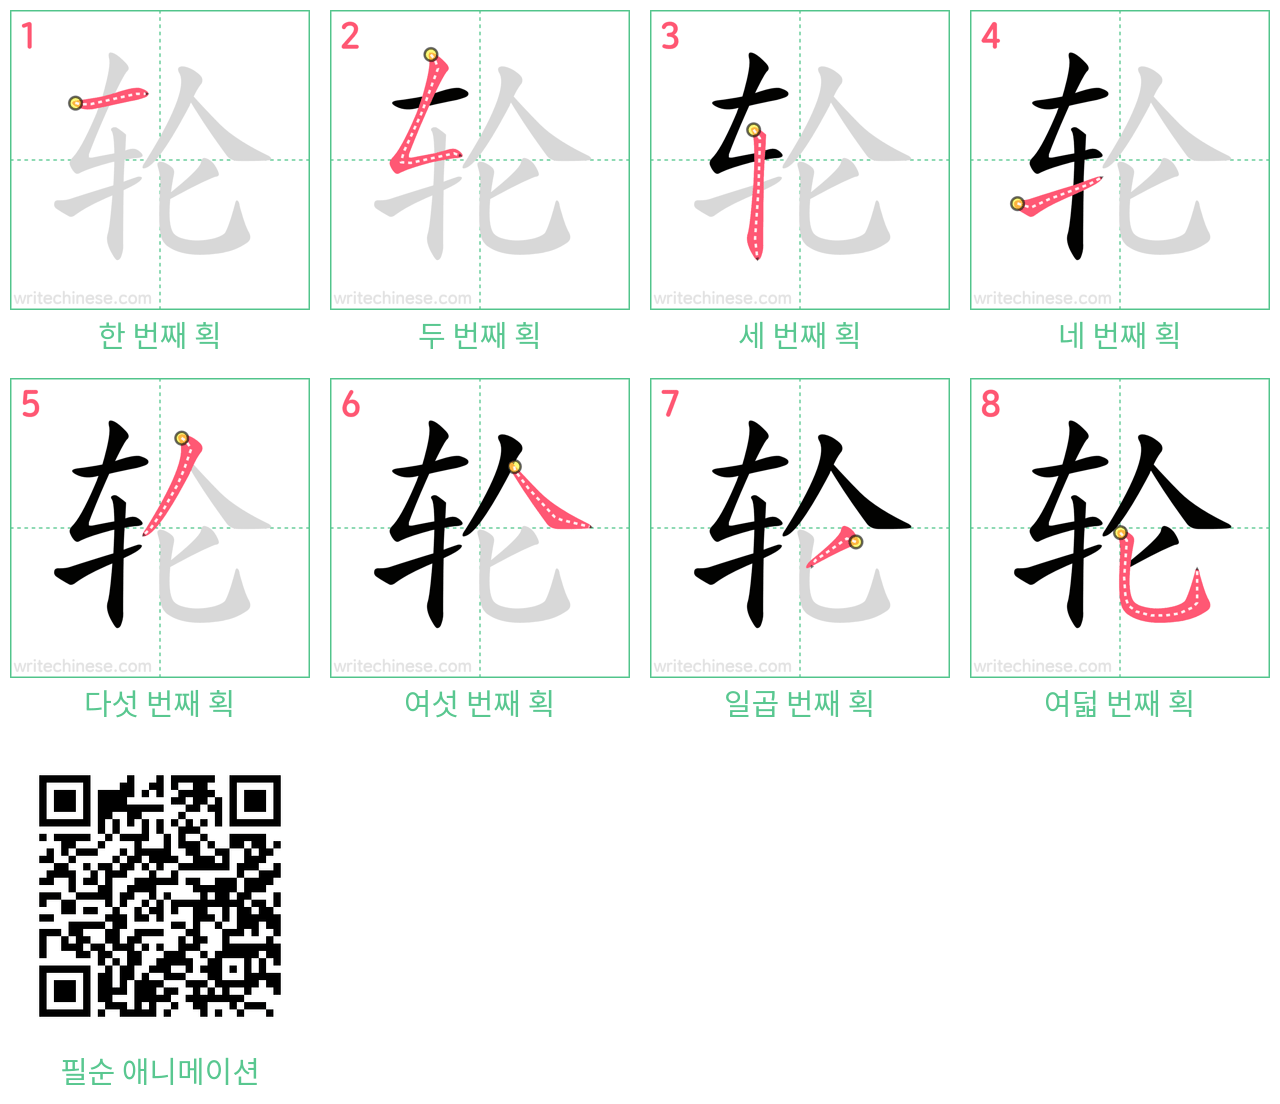 轮 step-by-step stroke order diagrams